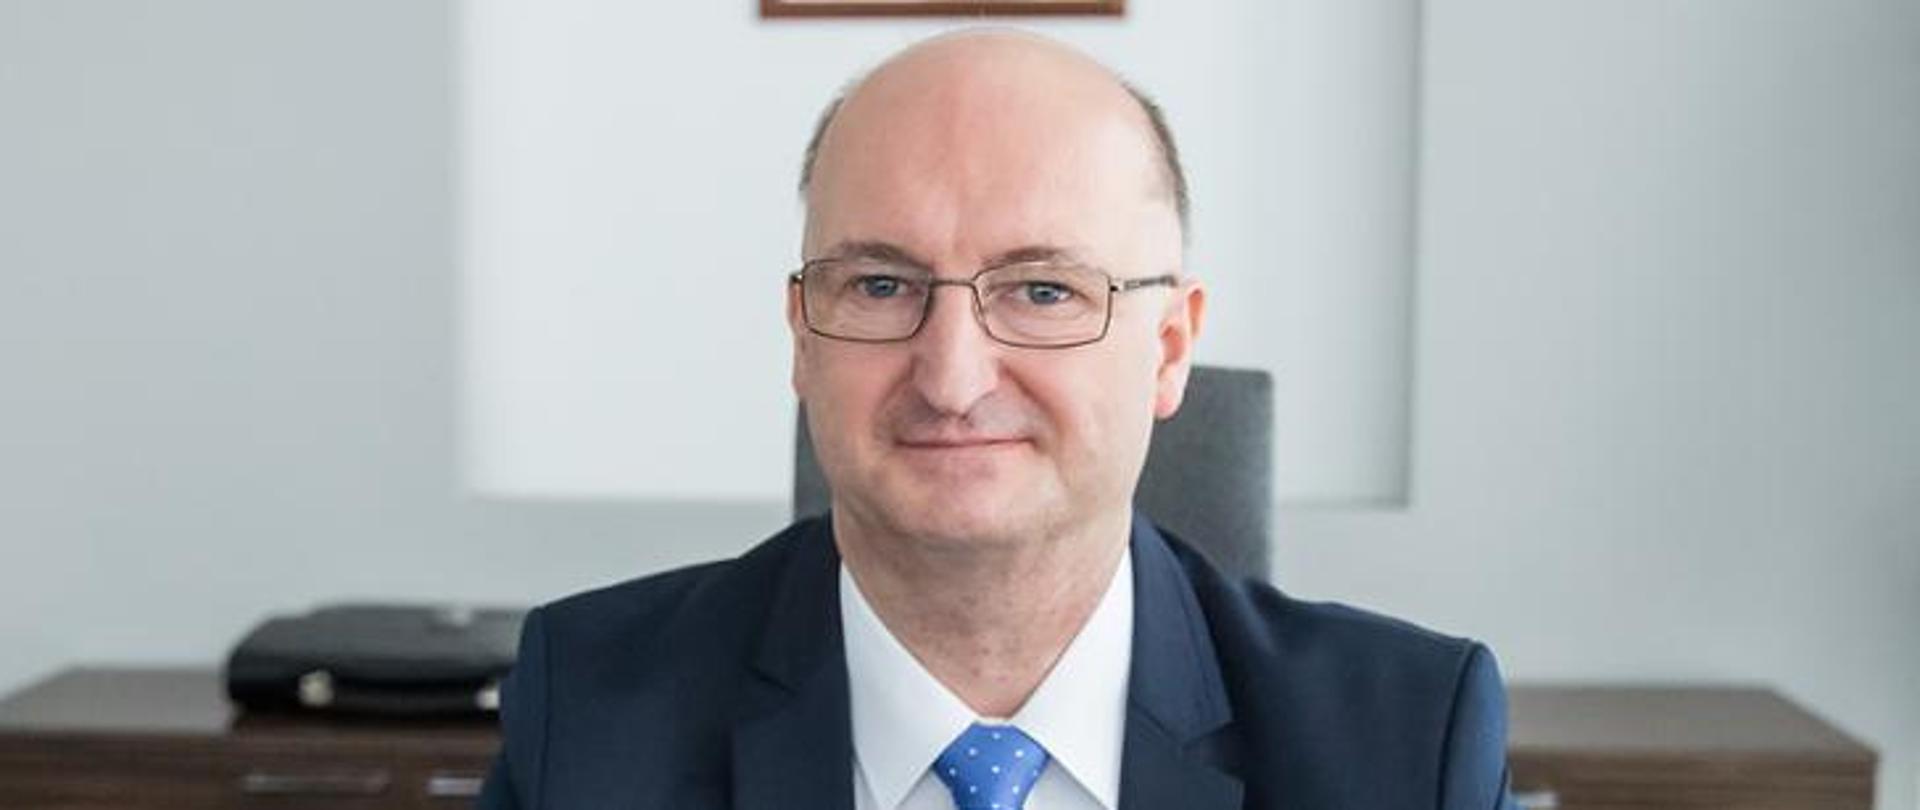 Piotr Wawrzyk
Sekretarz stanu